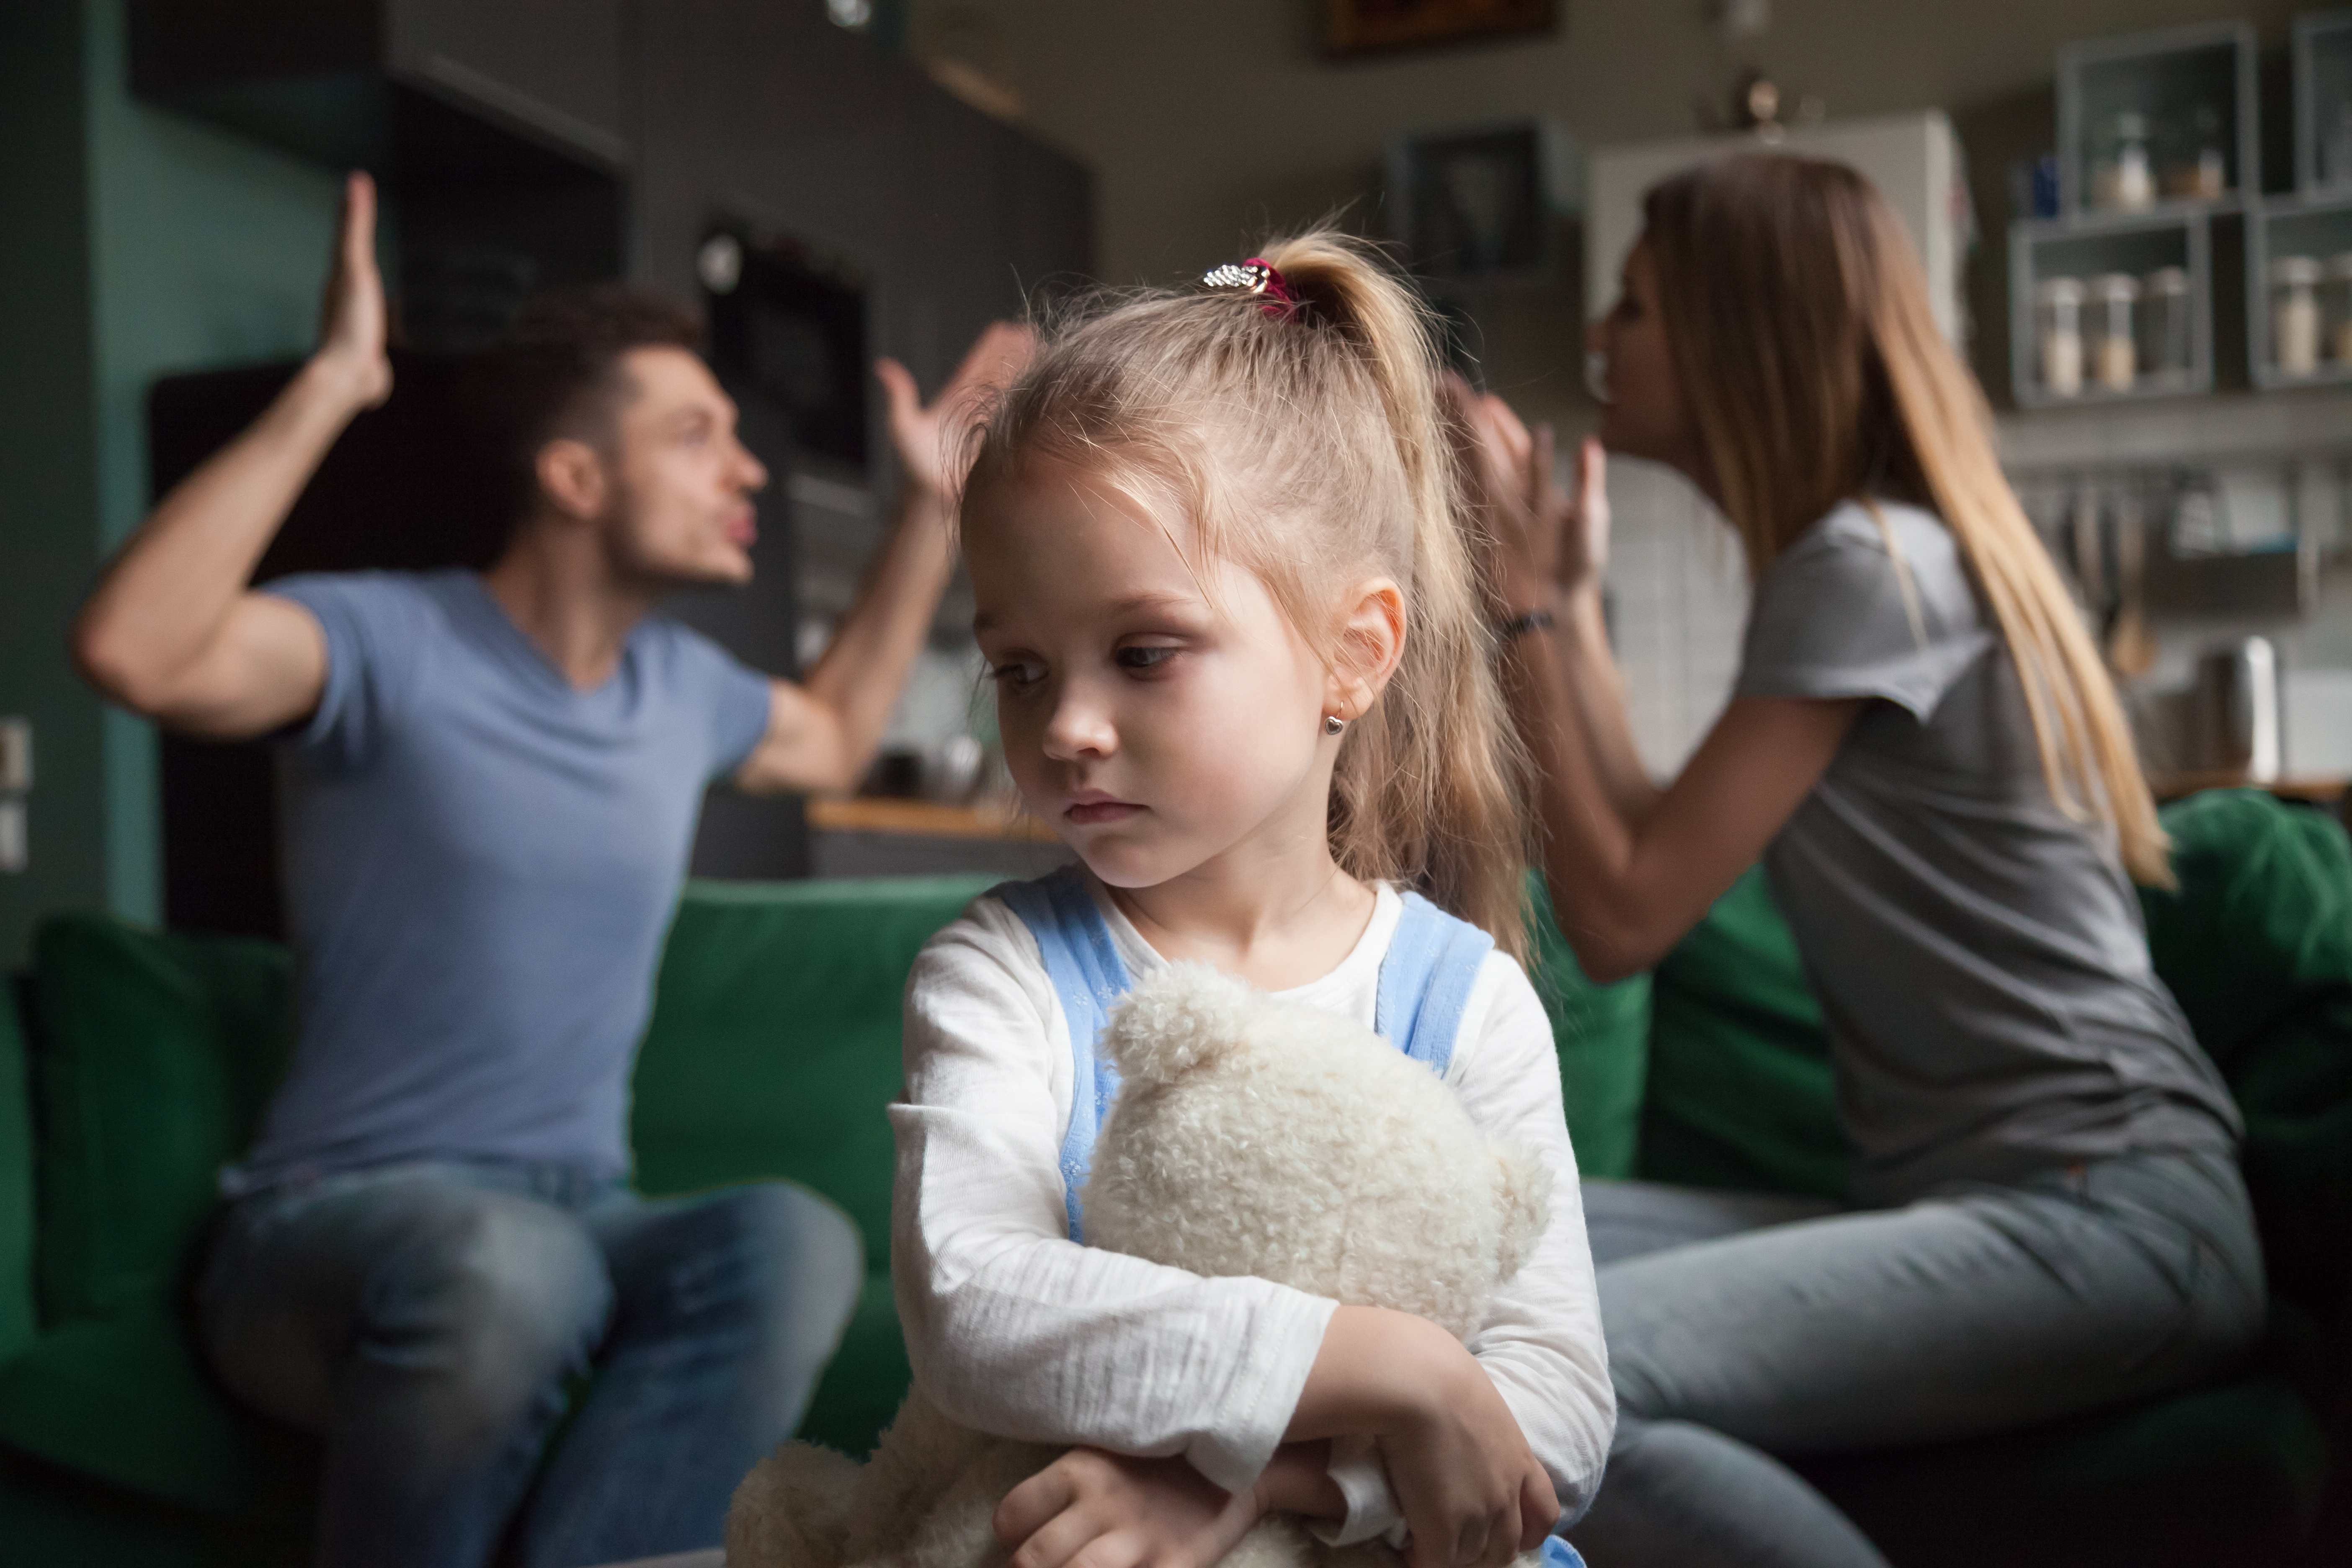 Ein kleines Mädchen, das sich aufregt, während sich seine Eltern im Hintergrund streiten | Quelle: Shutterstock